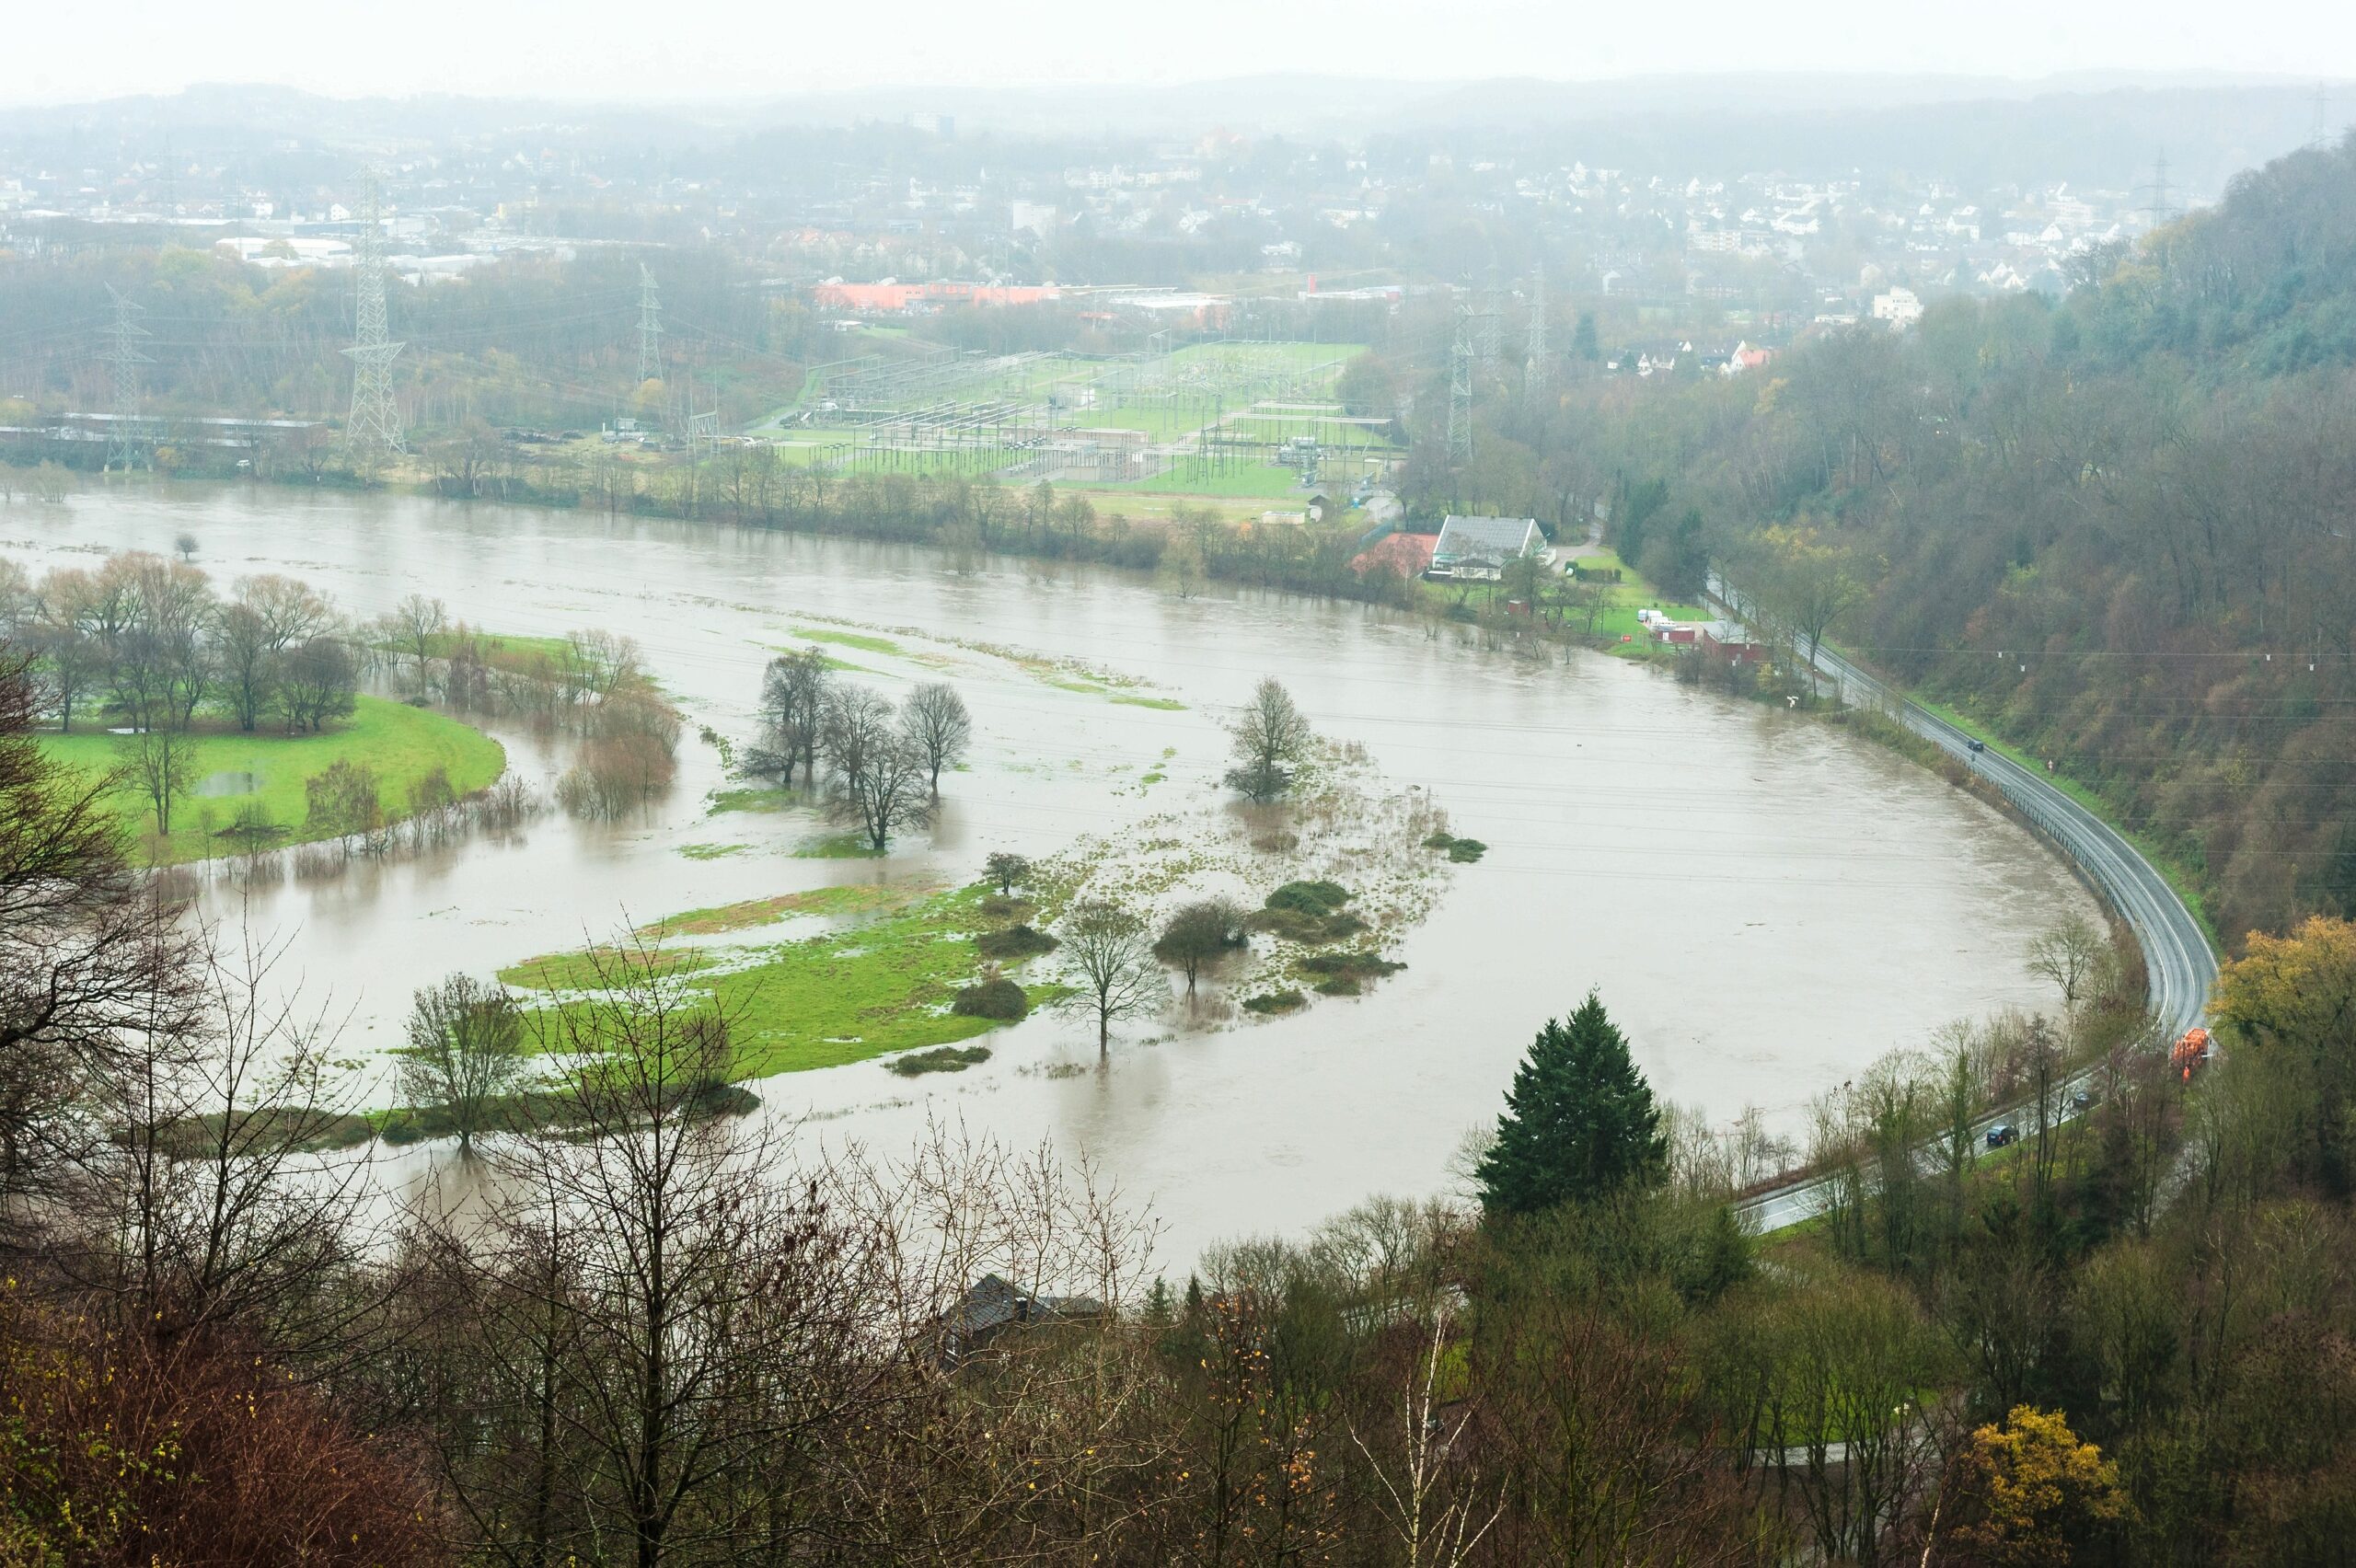 Winter 2015 in Hattingen, Hochwasser der Ruhr, weite gebiete sind überschwemmt und Verkehrswege, vor allem der Radweg Leinpfad wurden gesperrt, hier Blick von der Isenburg Ruine aus auf den Ruhrbogen an der Isenbergstraße, die Ruhrauen sind weitesgehend überflutet.